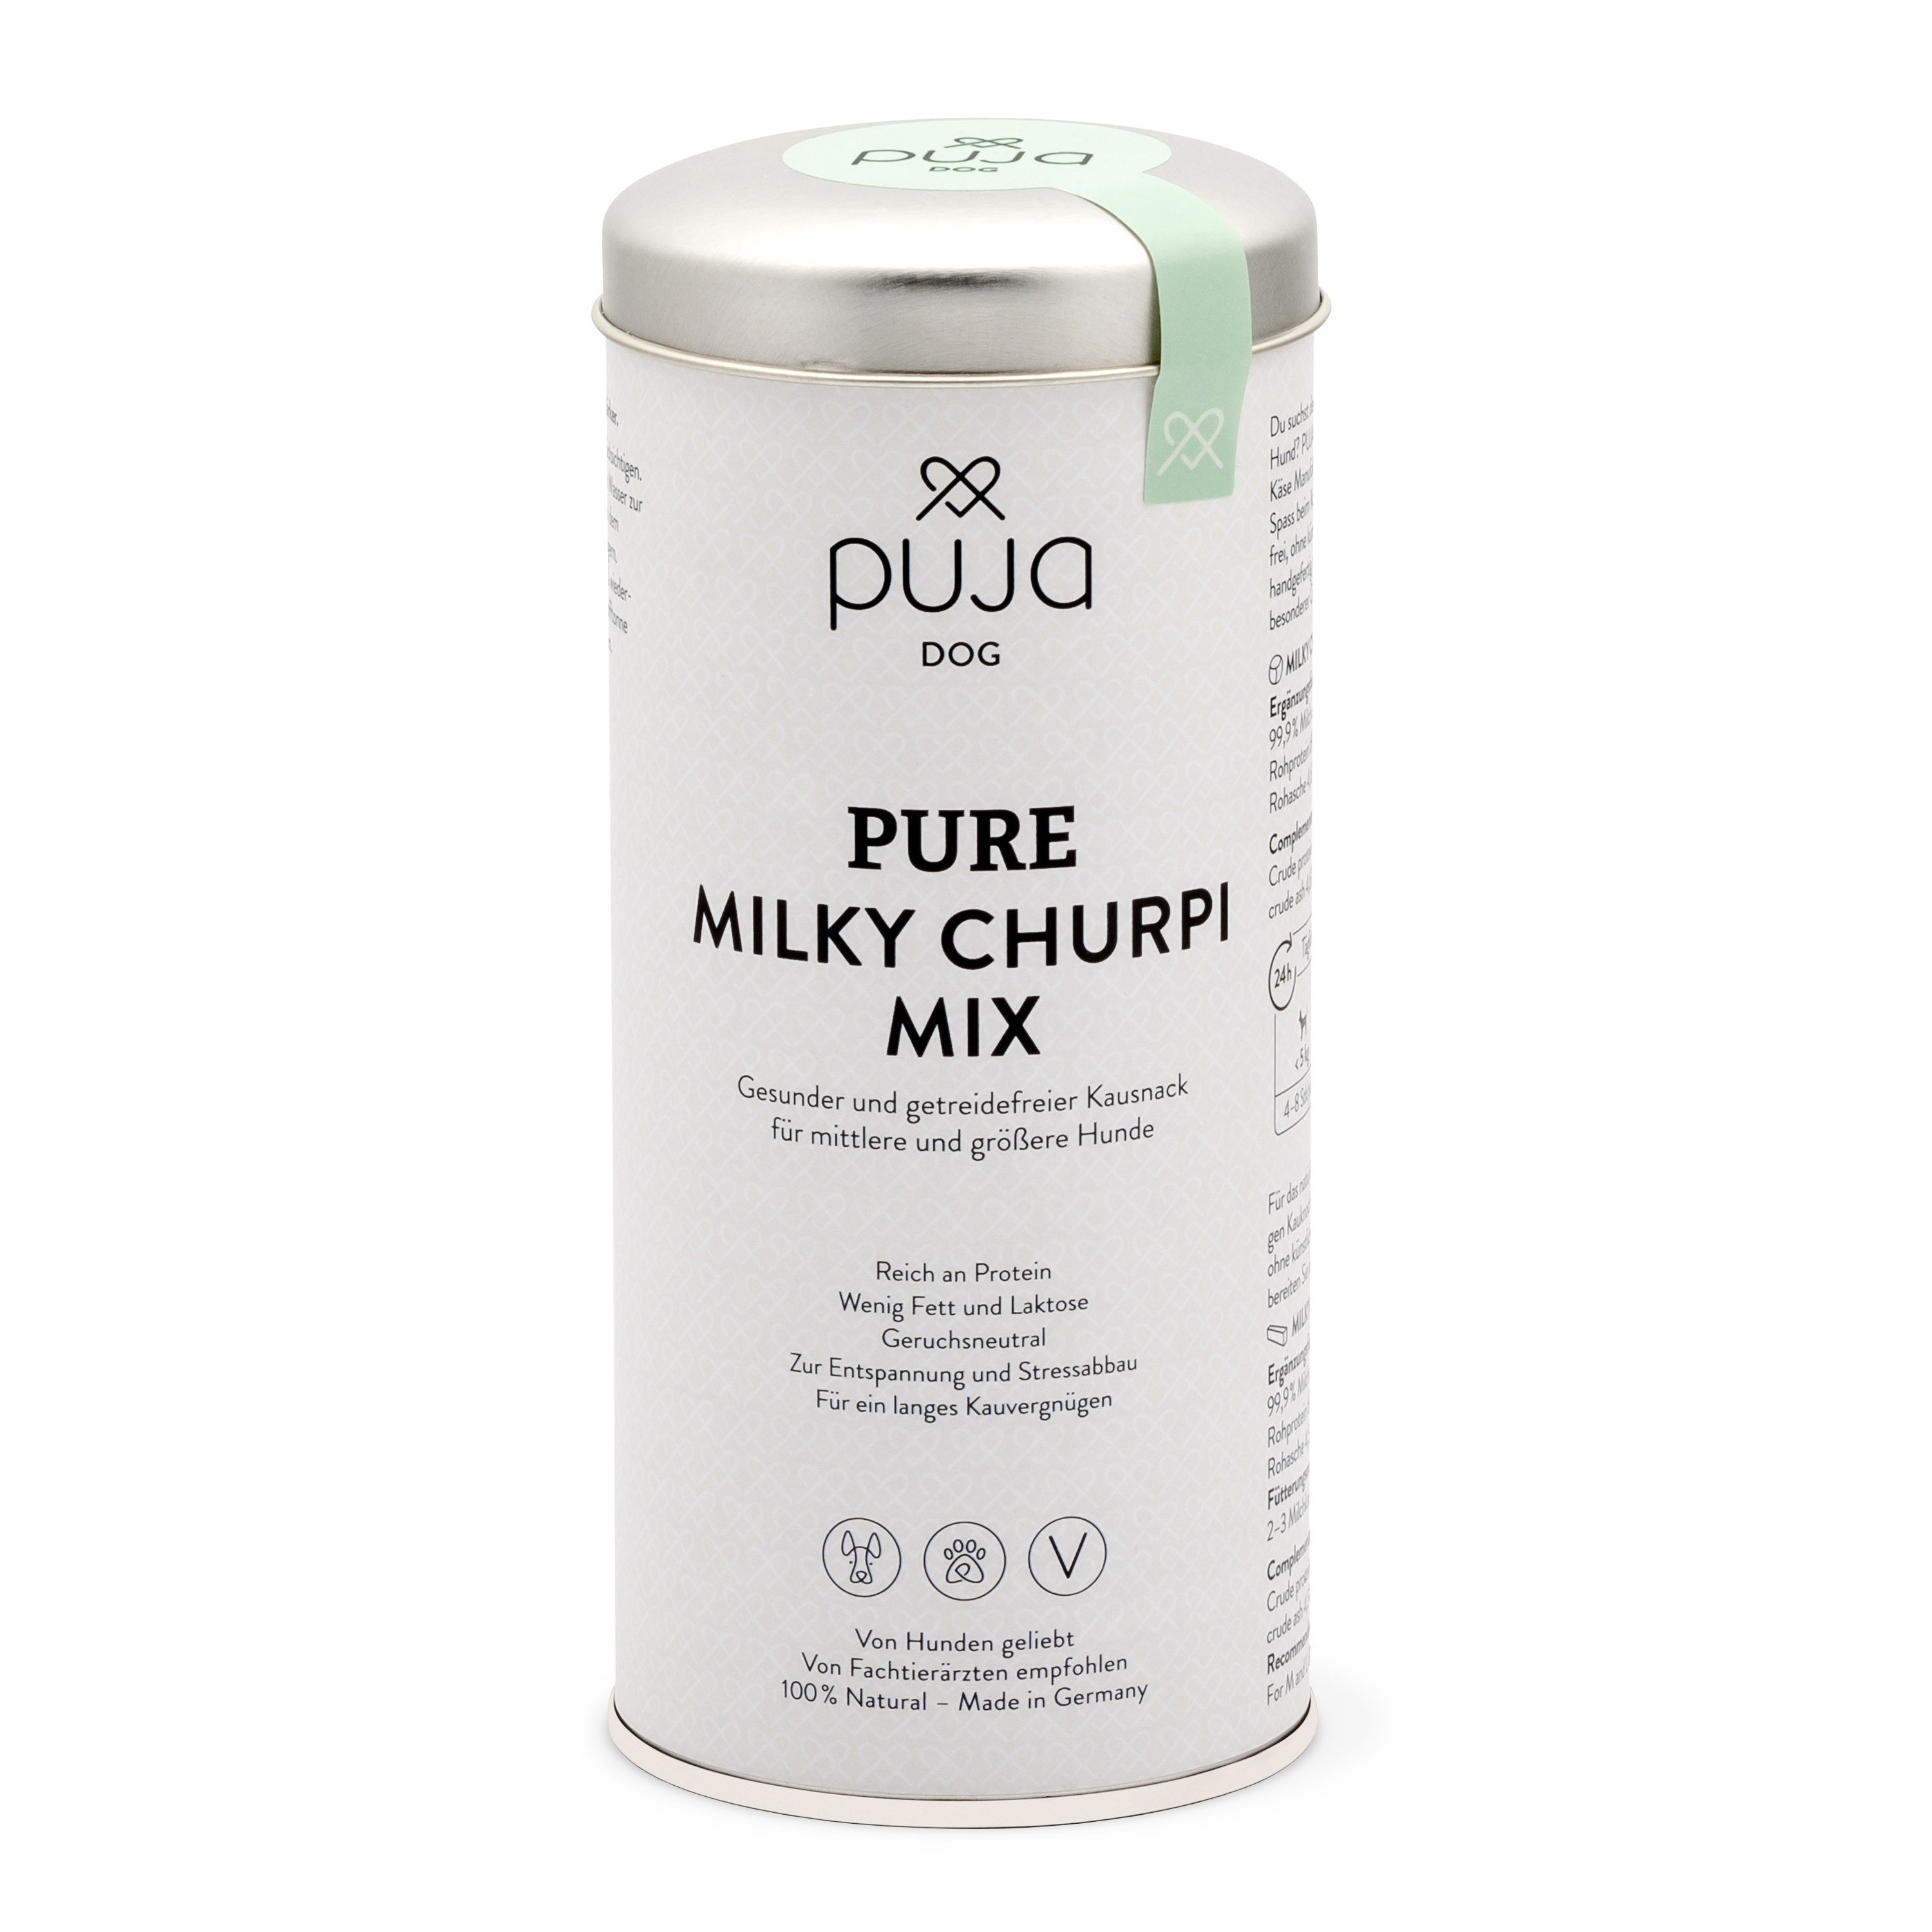 Pure Milky Churpi Mix - Gesunder und getreidefreier Kausnack für mittlere und größere Hunde 195g